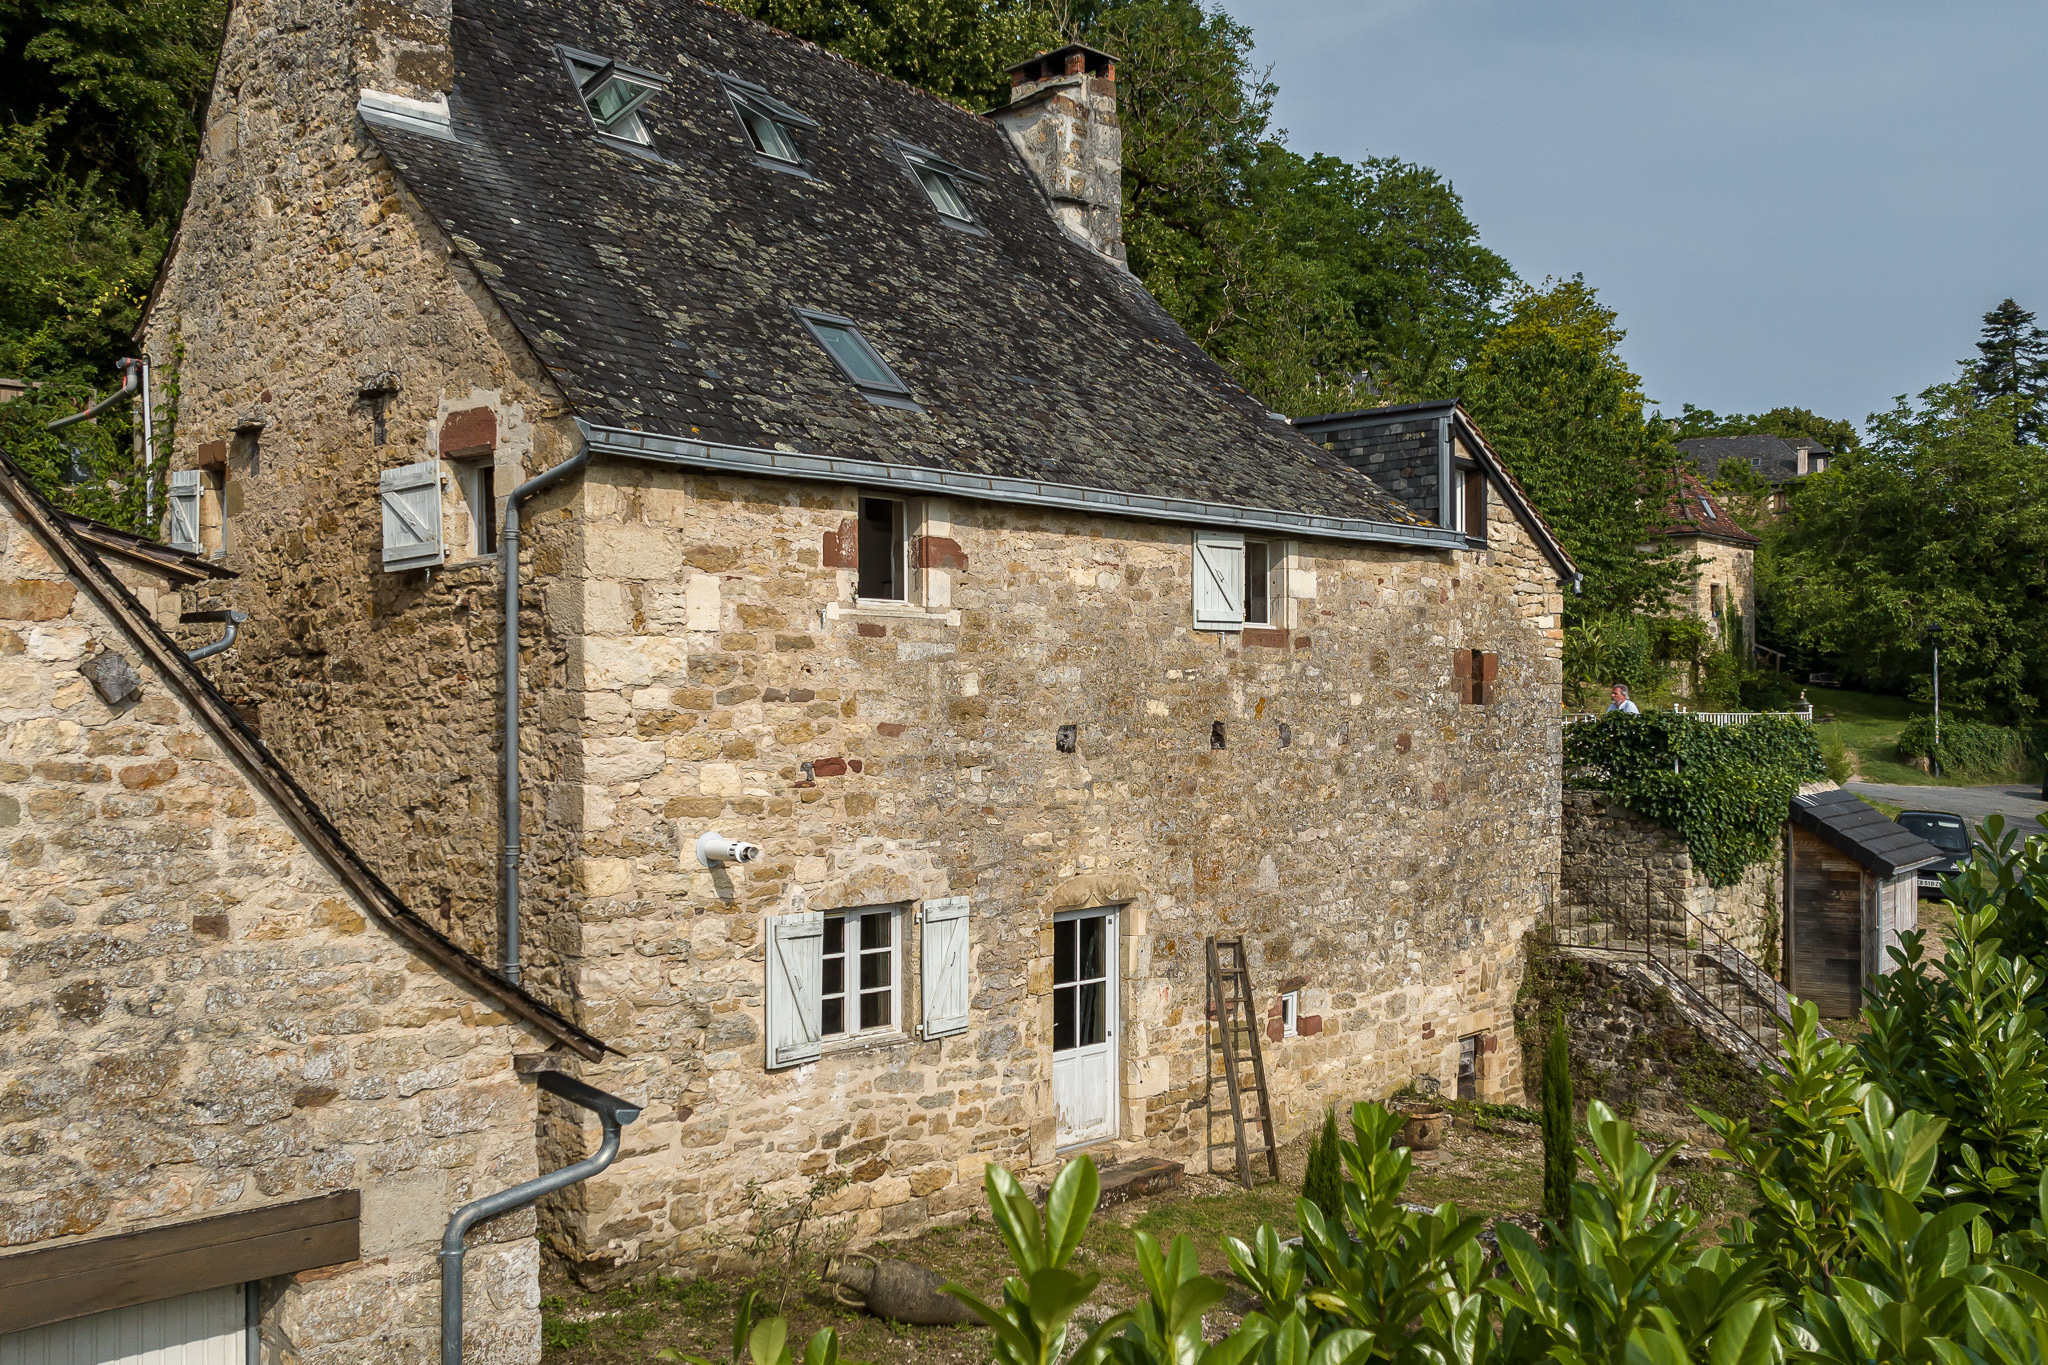 Maison de village des XIIème et XVIème siècles, vue exceptio 